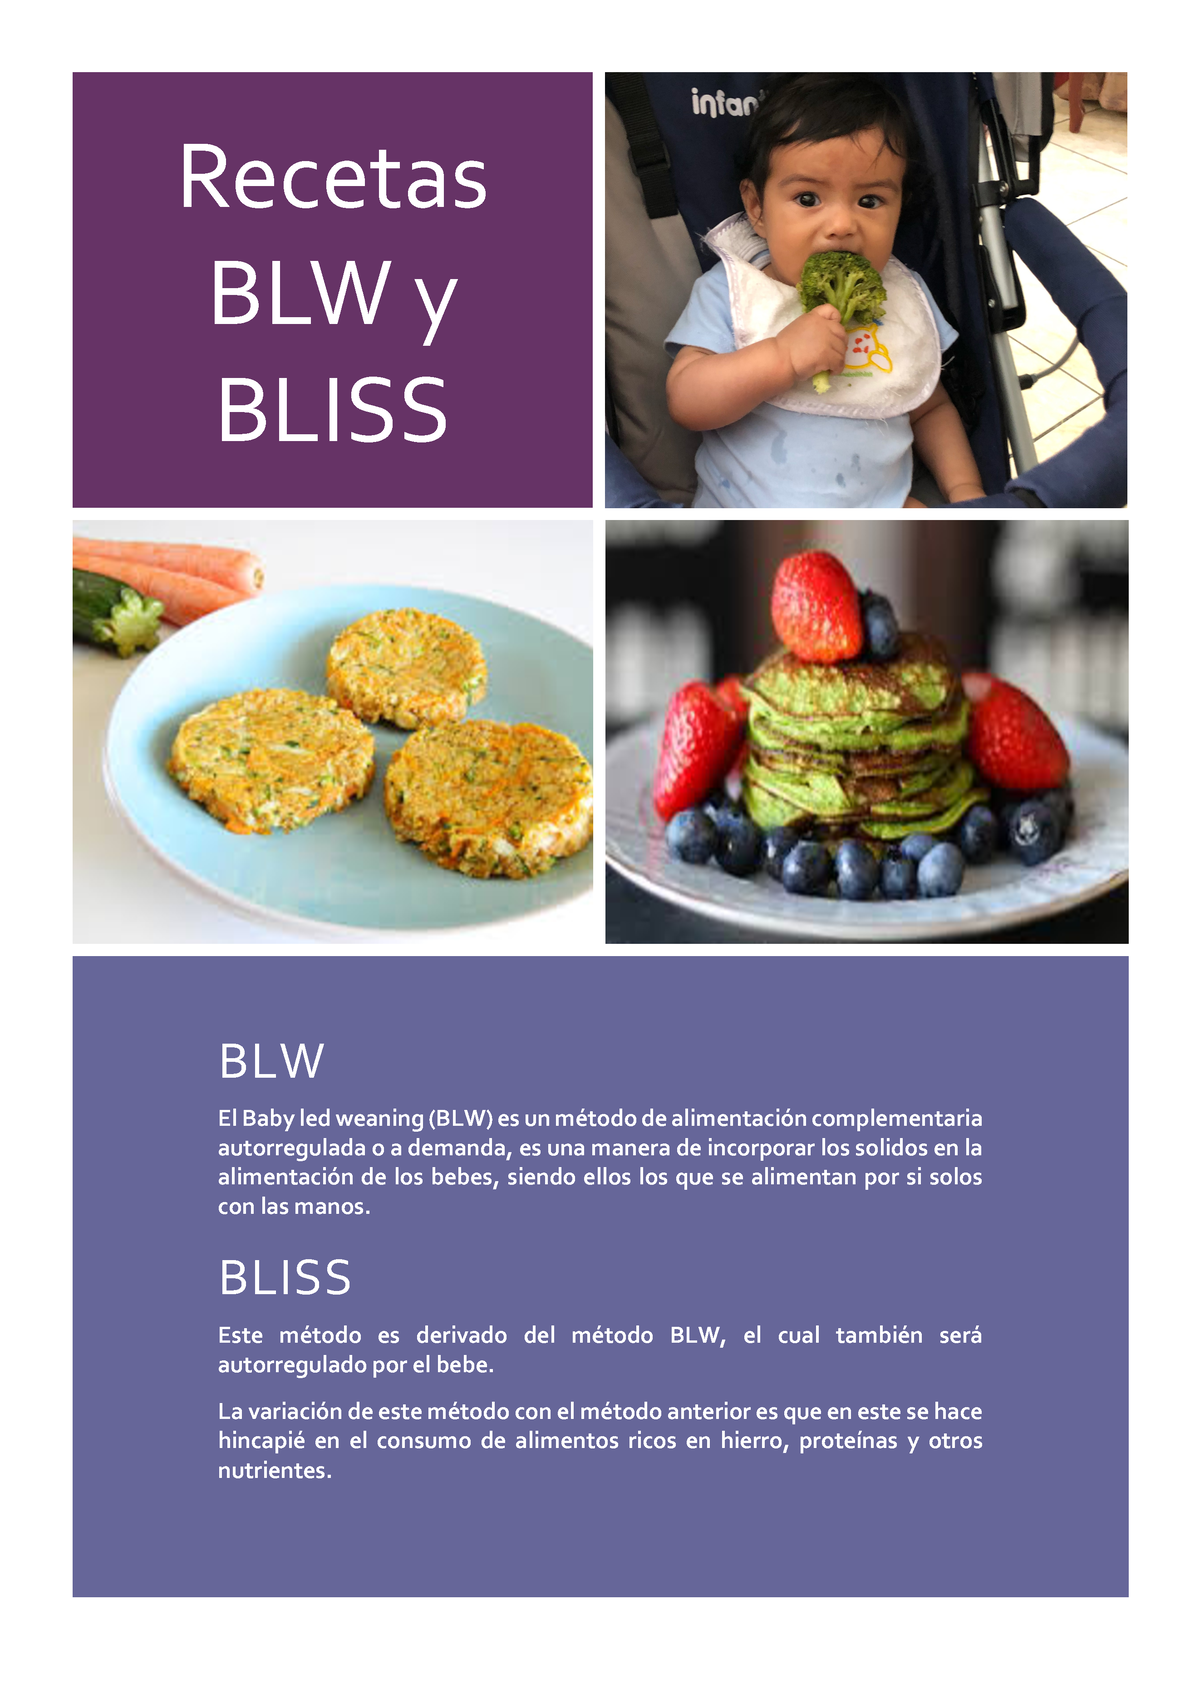 Recetas Curso Alimentacion Complementaria - Recetas BLW y BLISS BLW El Baby  led weaning (BLW) es un - Studocu